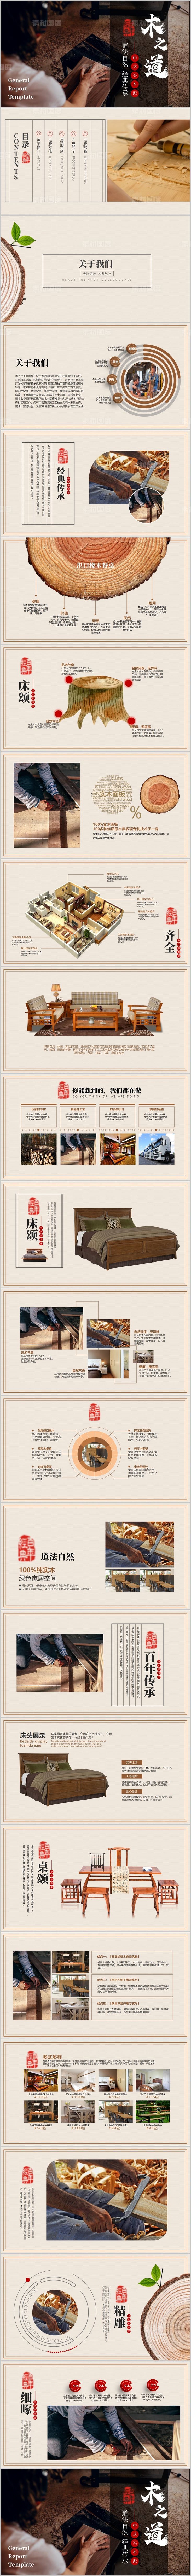 中式木制家具家居企业宣传介绍PPT